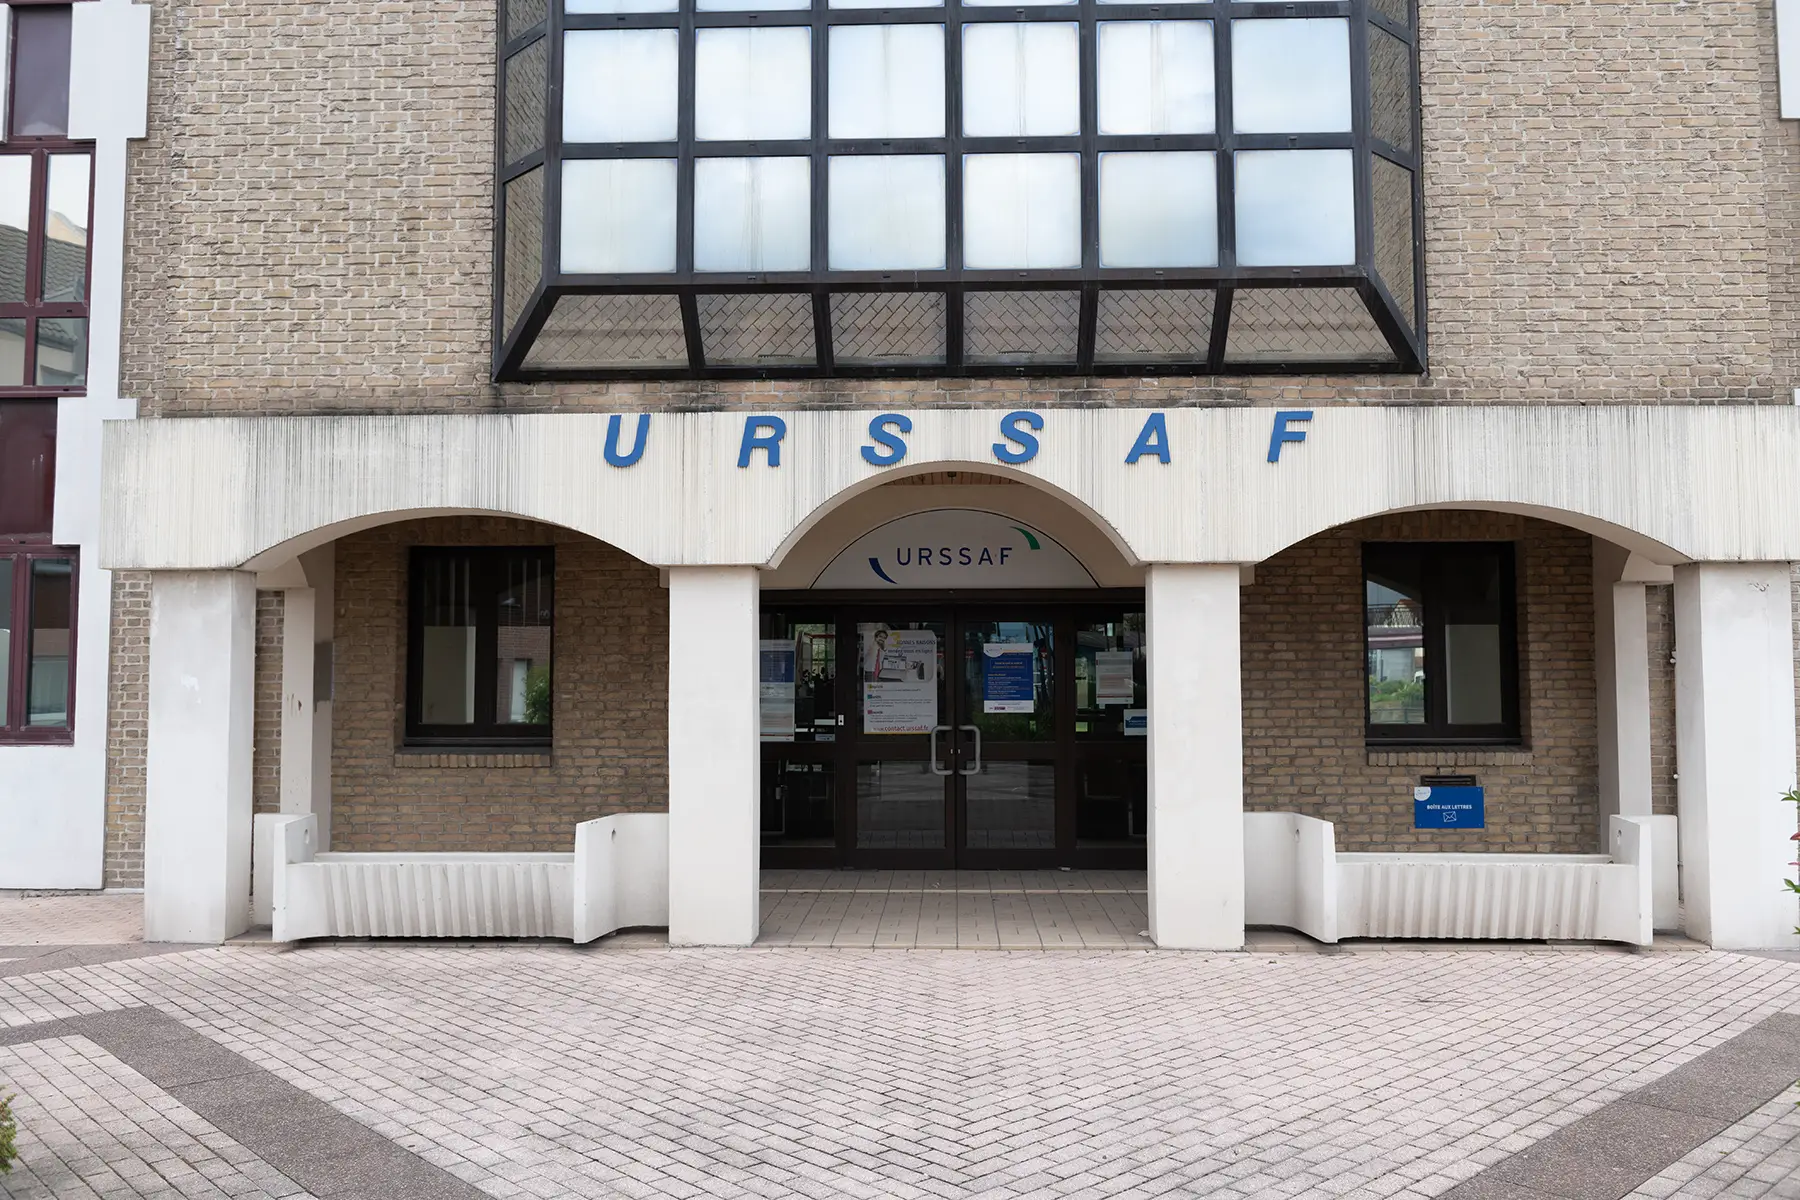 Urssaf building in Calais